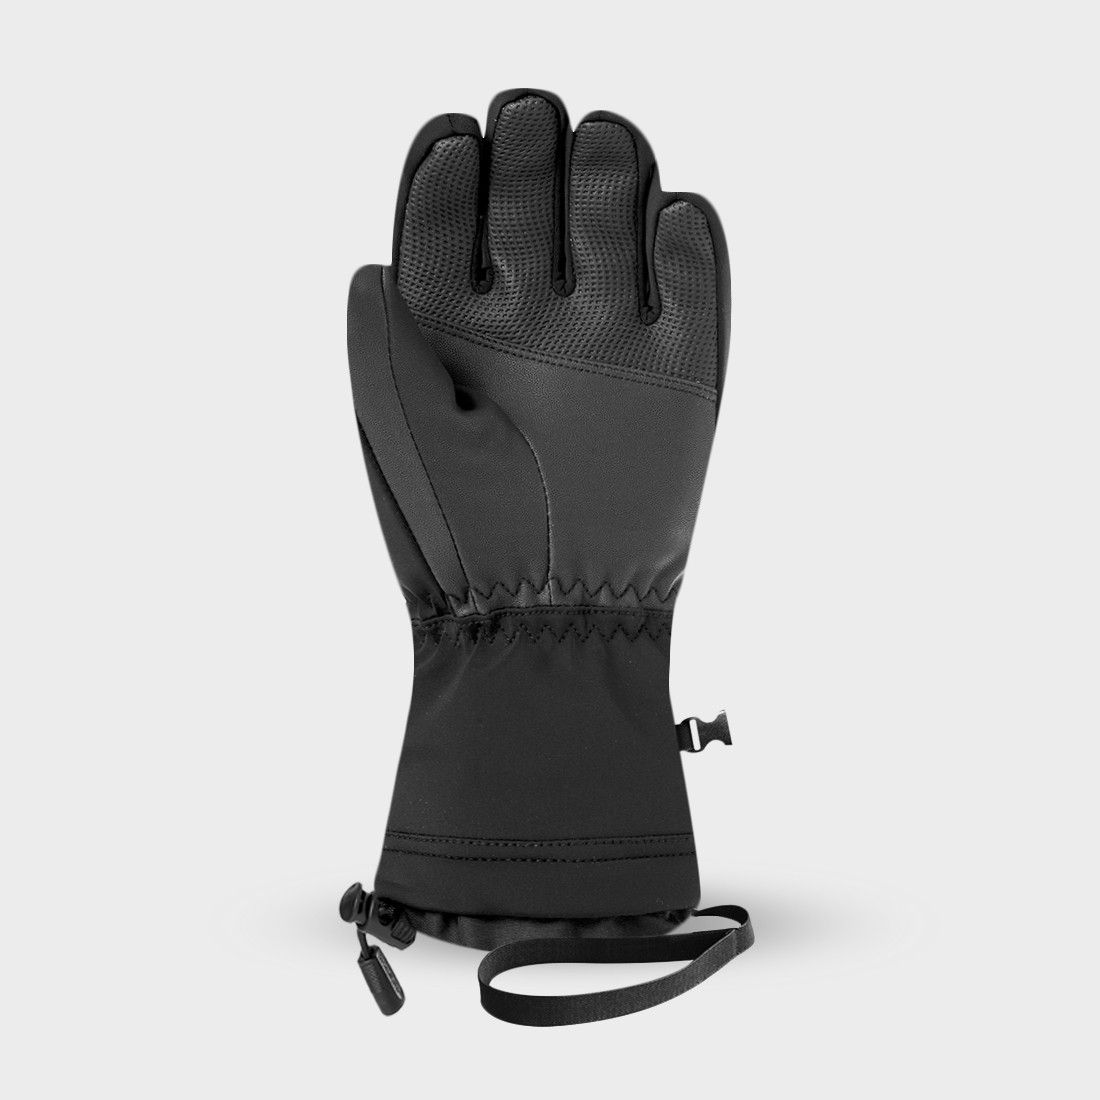 GRAVEN 4 - スキー手袋